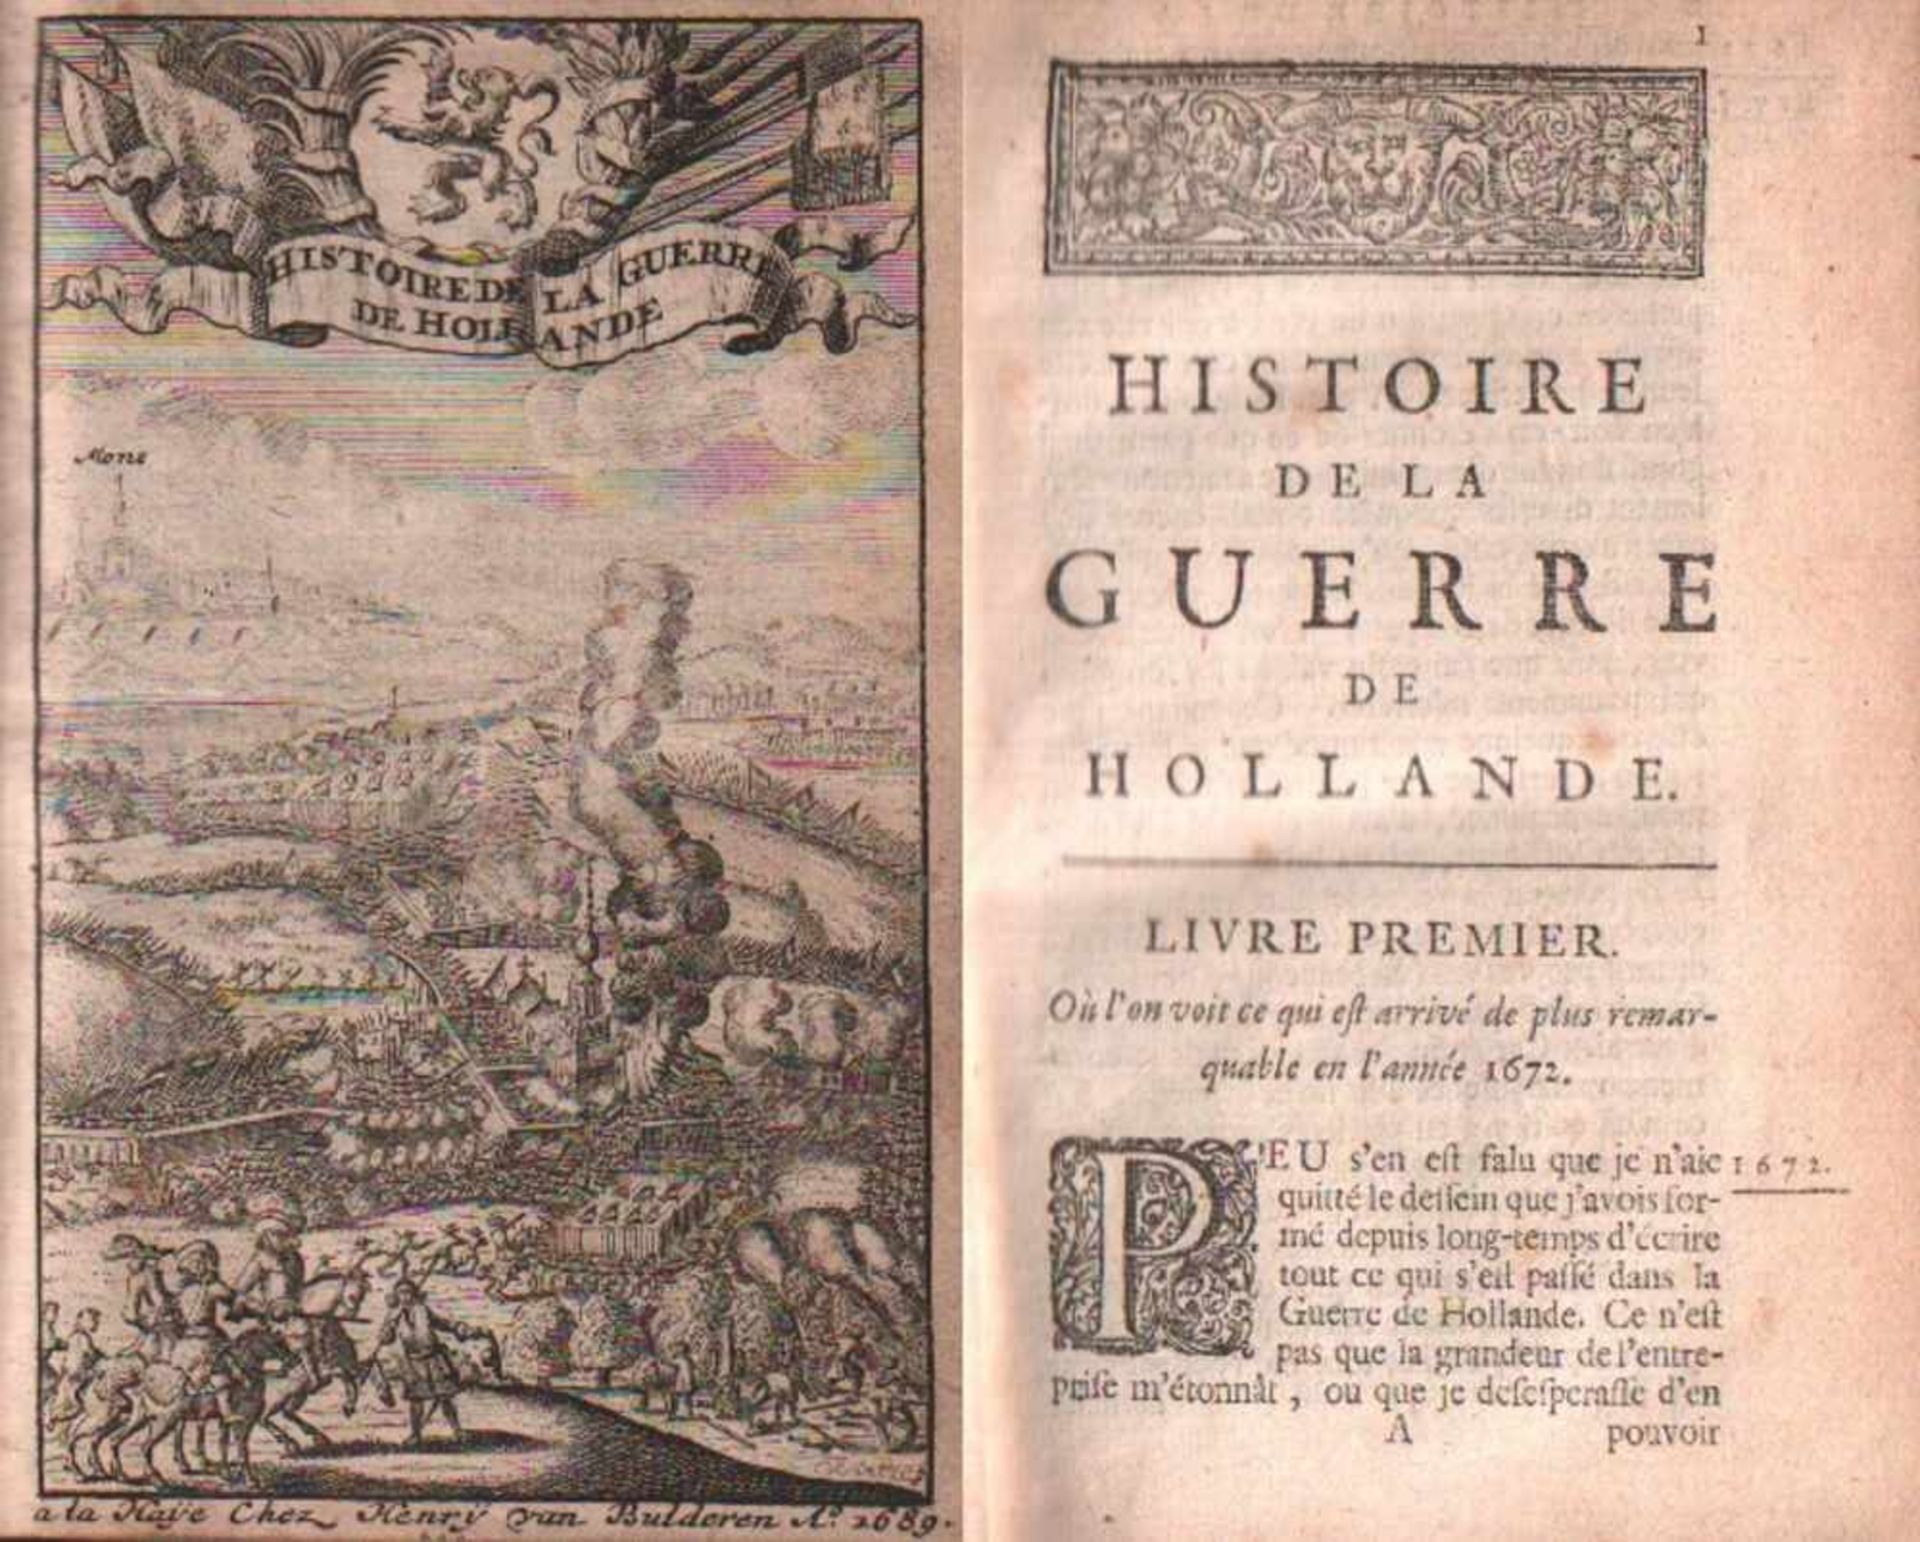 (Courtilz de Sandras, G.)Histoire de la guerre de Hollande. Zwei Bände in 1 Band (1672 jusques en